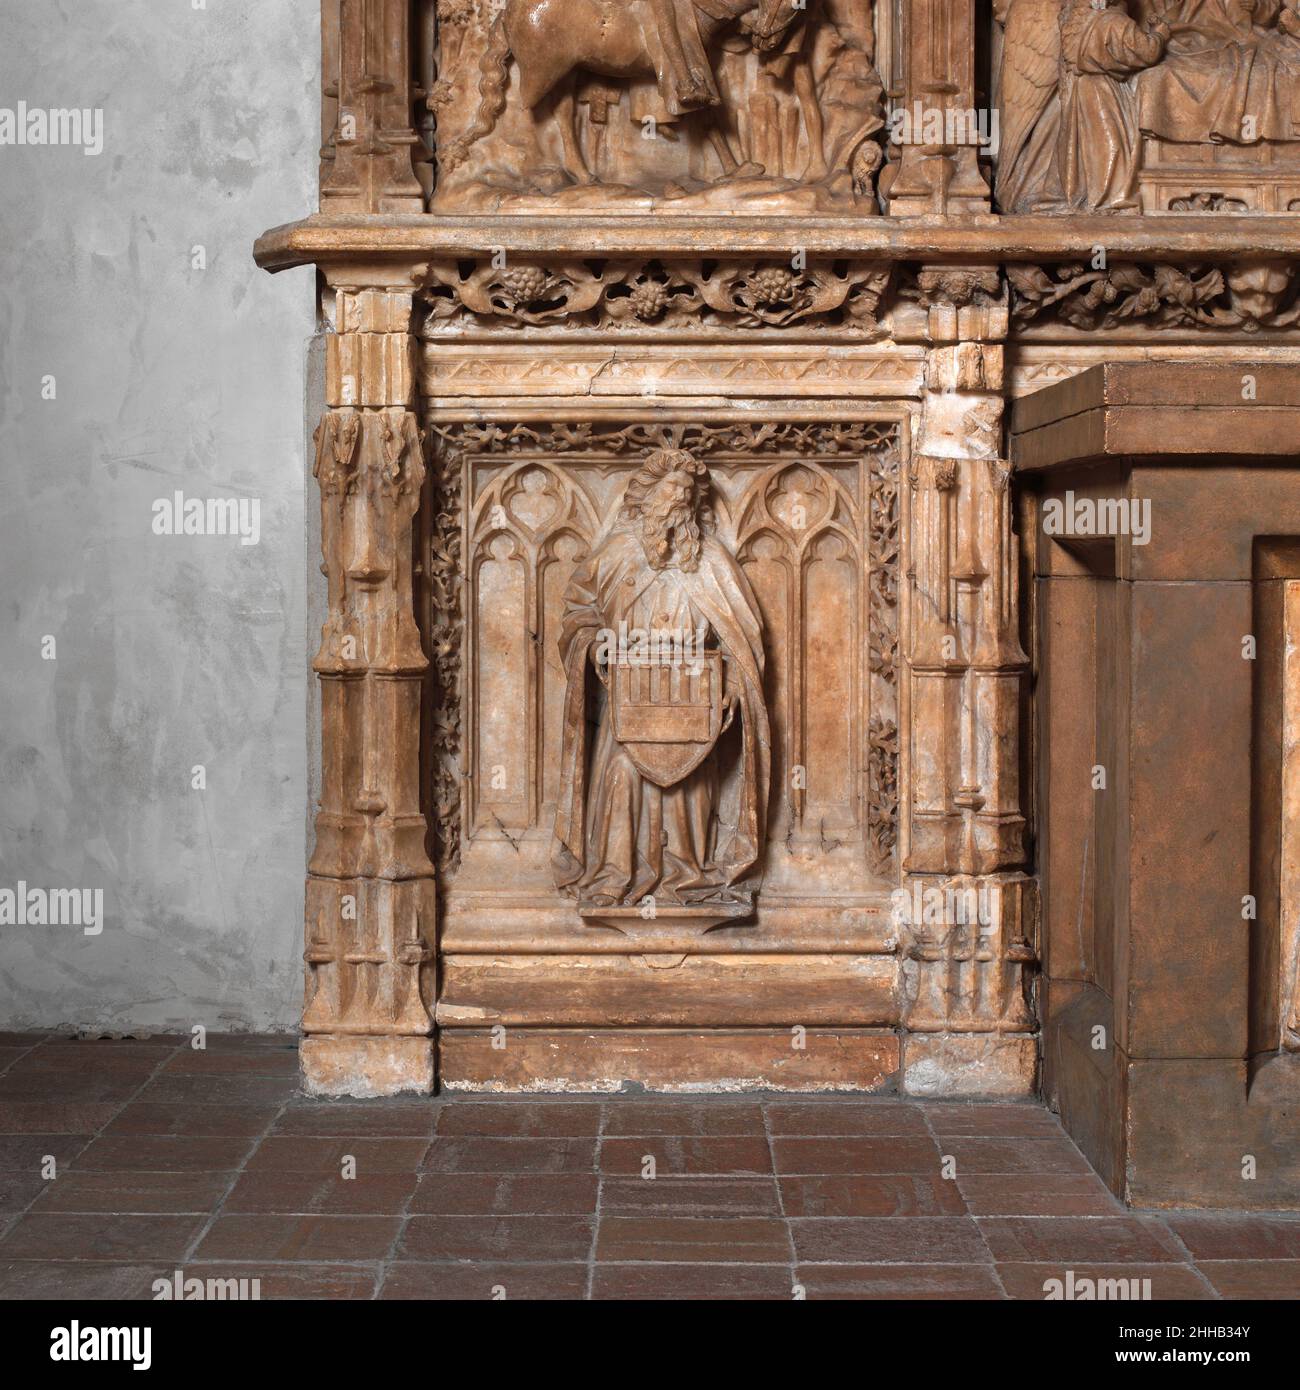 Autel predella et Socle de l'Archevêque Don Dalmau de mur y Cervello ca.1456–1458 Francí Gomar Espagnol cette structure massive, qui s'étend sur cinq baies sur deux niveaux, a été commandée par don Dalmau de mur y Cervello, archevêque de Saragosse de 1434 à 1458/9, pour un autel dans la chapelle du palais archiépiscopal.Le niveau supérieur (destiné comme la predella de l'retable ou retable) contient cinq scènes: Saint Martin ou Tours divisant son manteau avec un mendiant et Christ apparaissant à lui dans un rêve (panneaux de gauche); le Descent du Saint-Esprit (panneau central); et Saint Thecla écoutant Banque D'Images